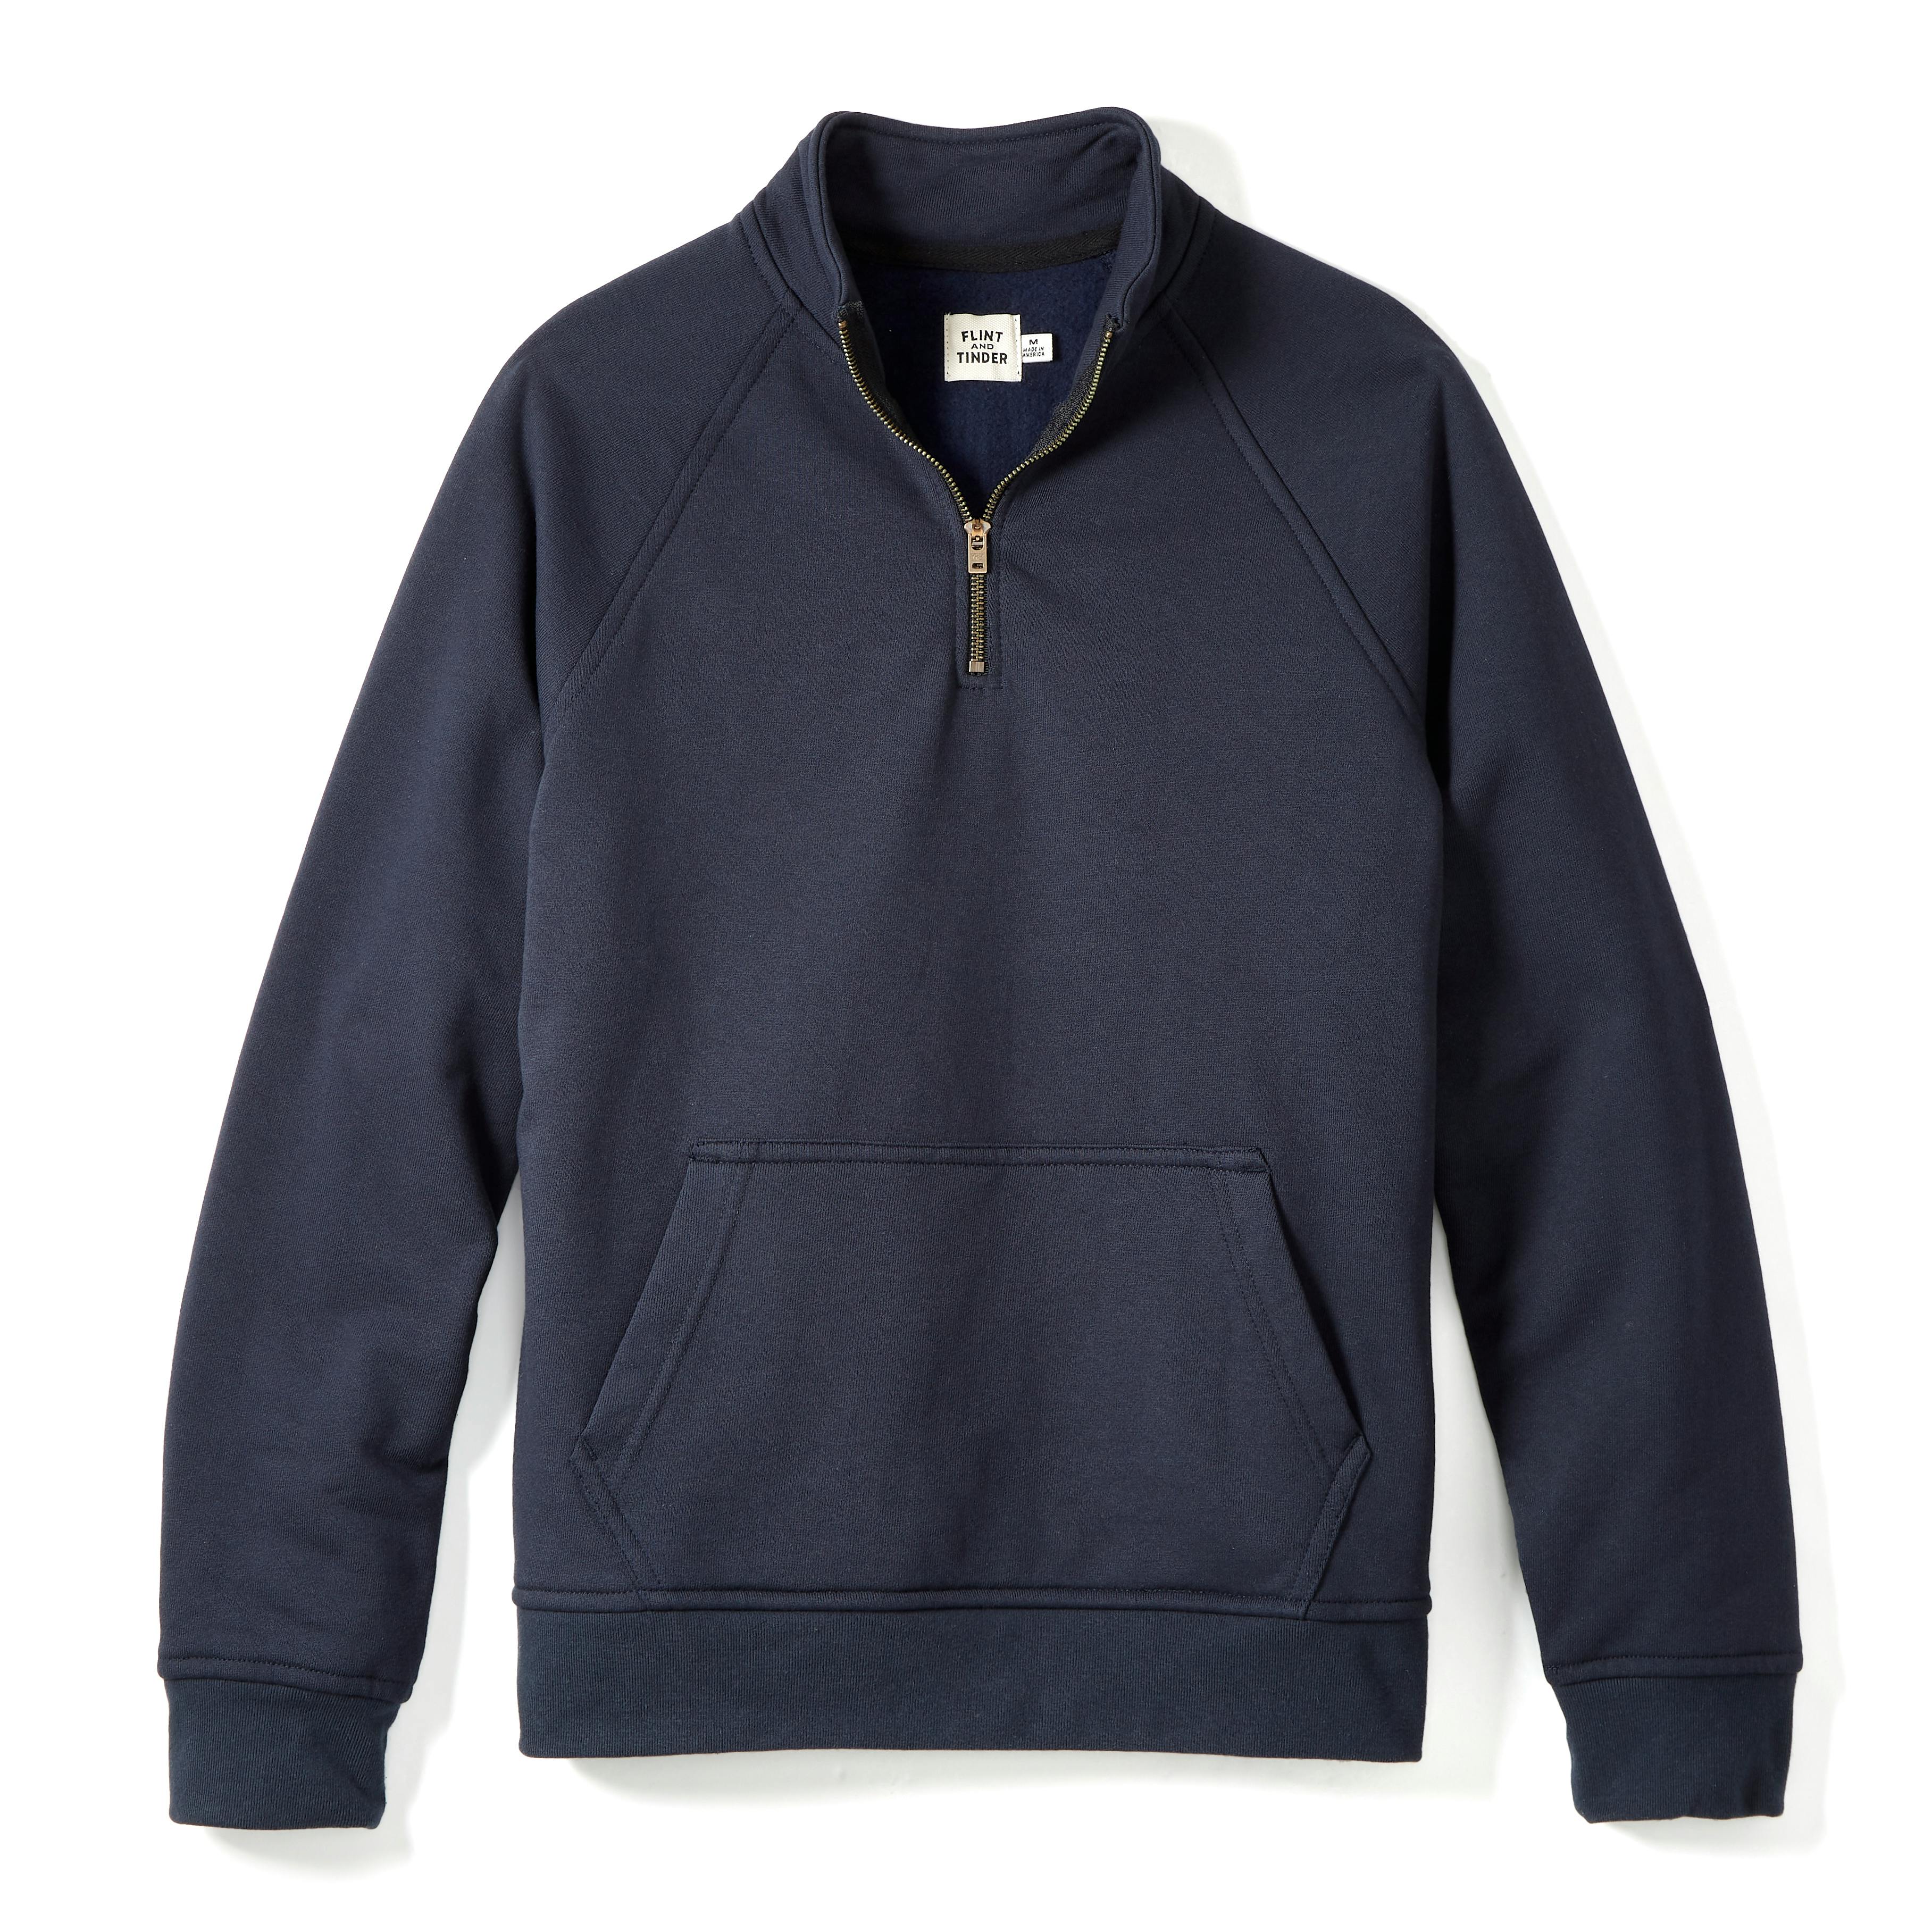 10-Year Quarter Zip Sweatshirt